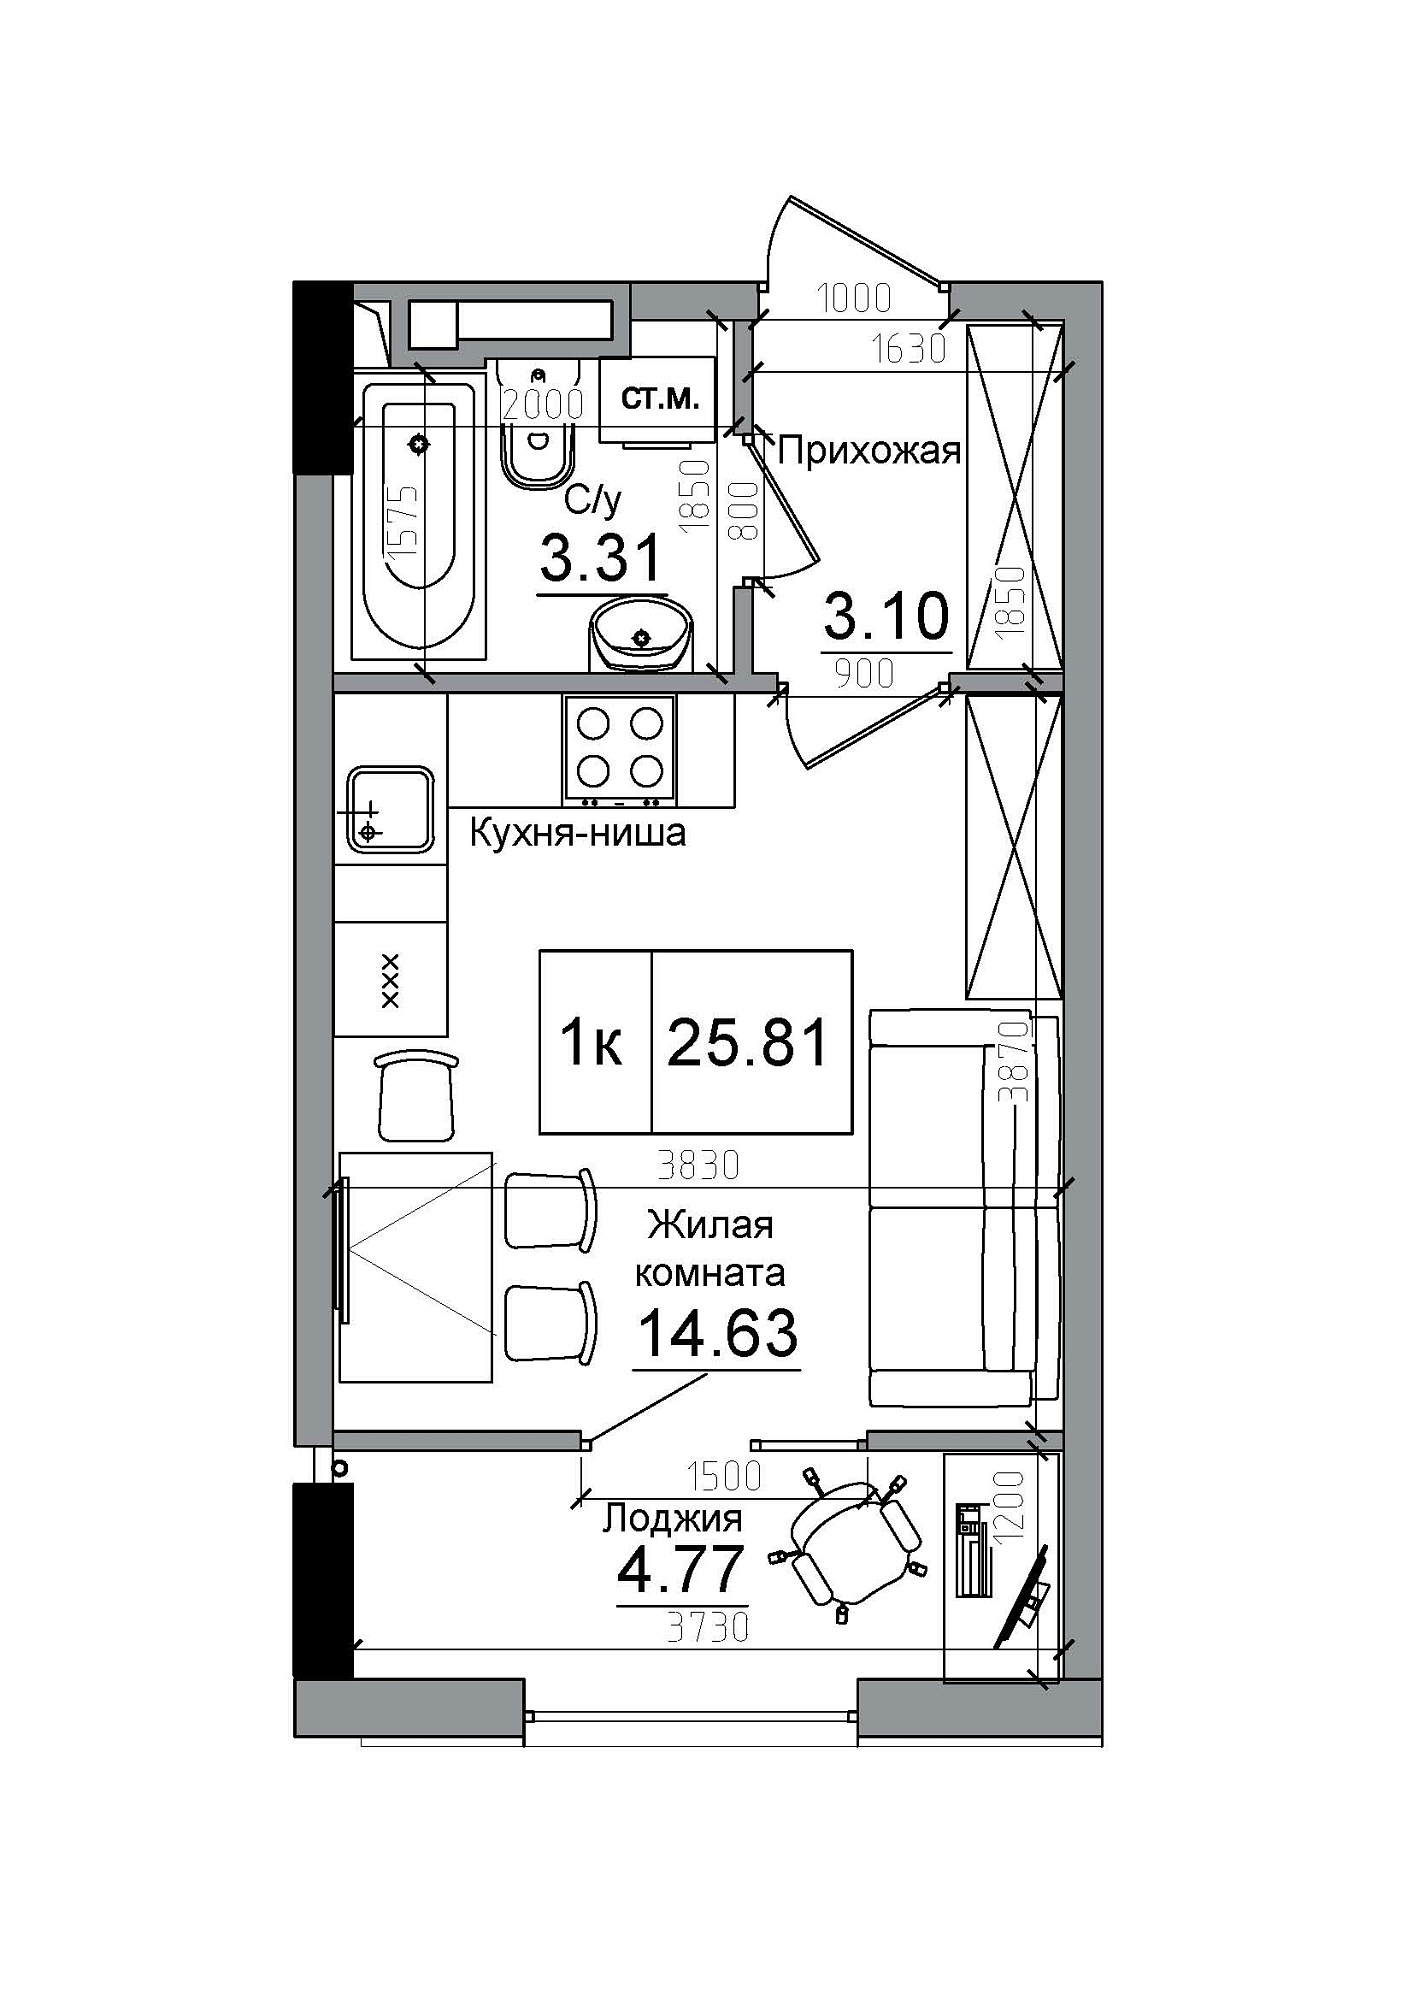 Планування Smart-квартира площею 25.81м2, AB-12-07/00013.